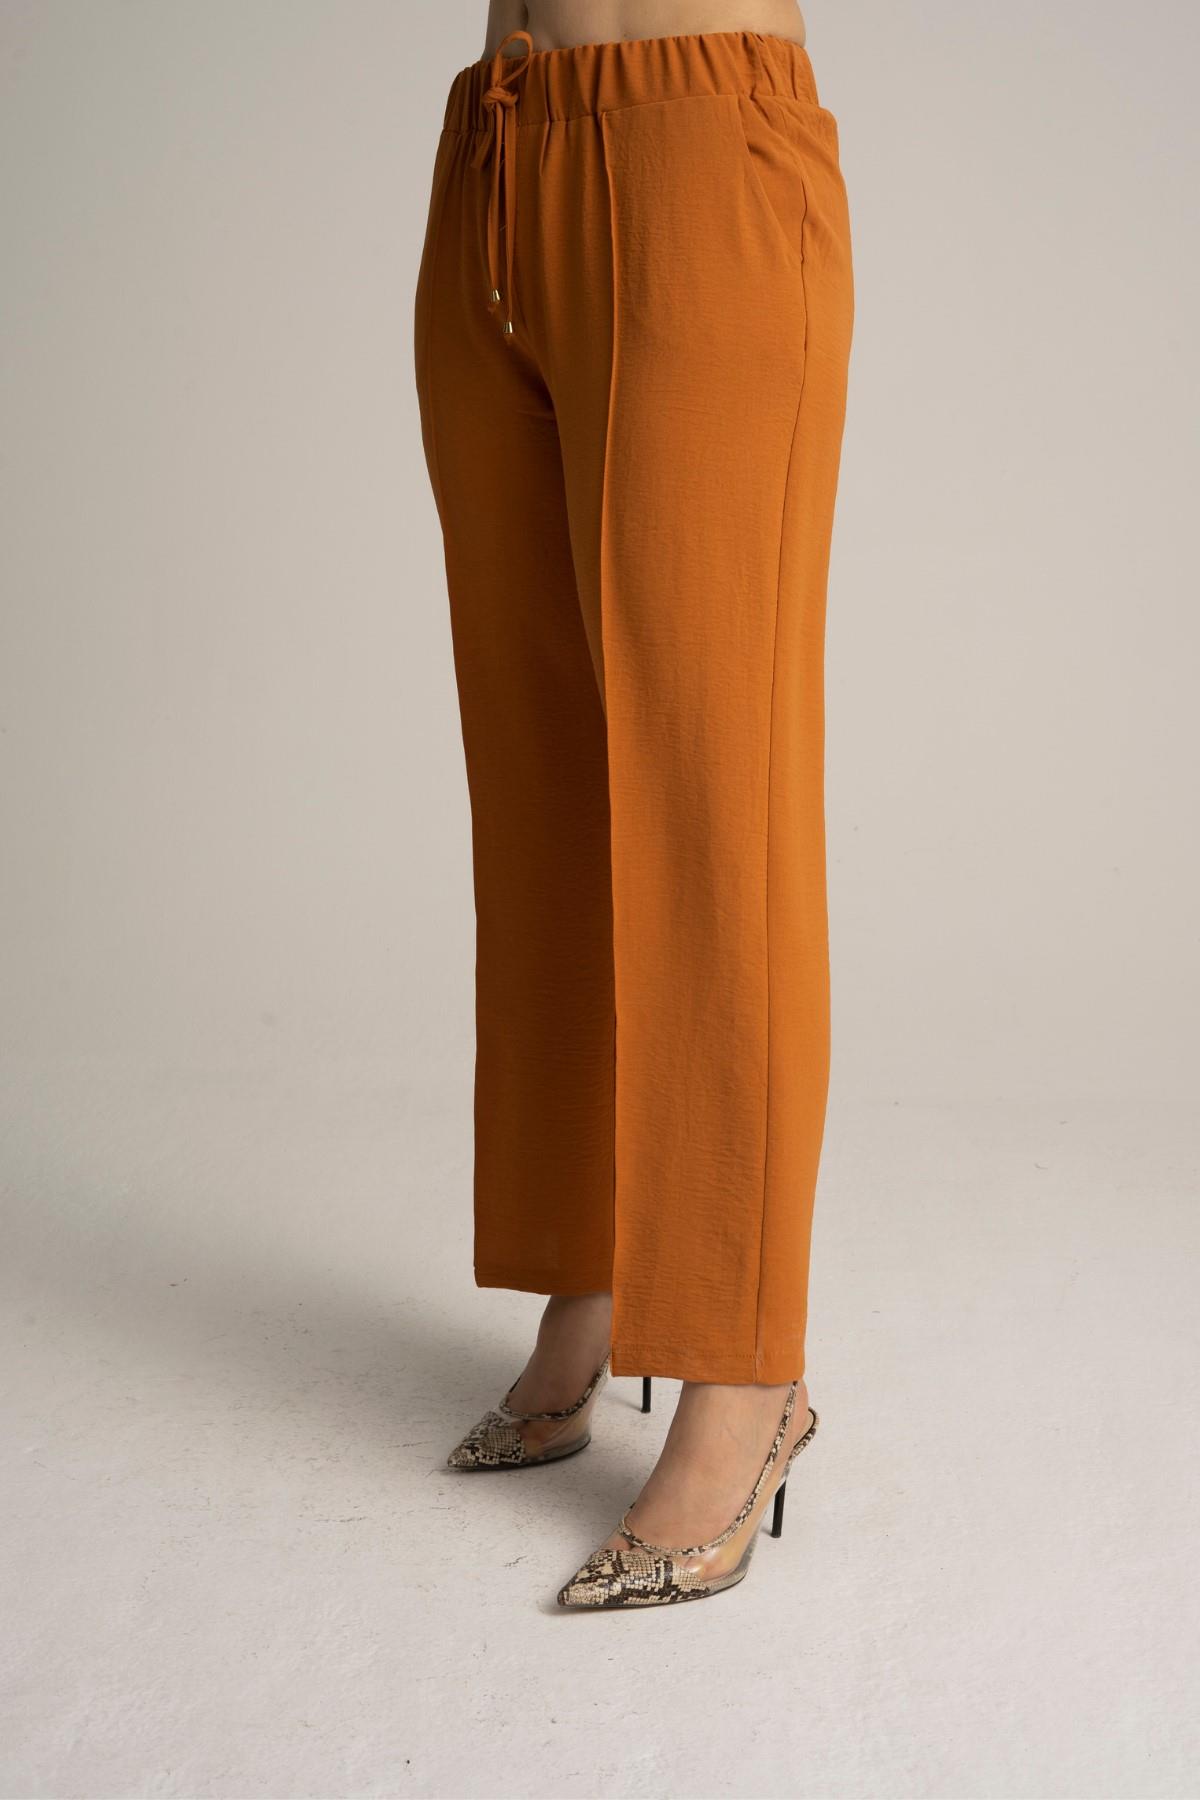 Kadın Büyük Beden Beli Lastikli Bol Paça Salaş Yazlık Tarçın Renk Pantolon